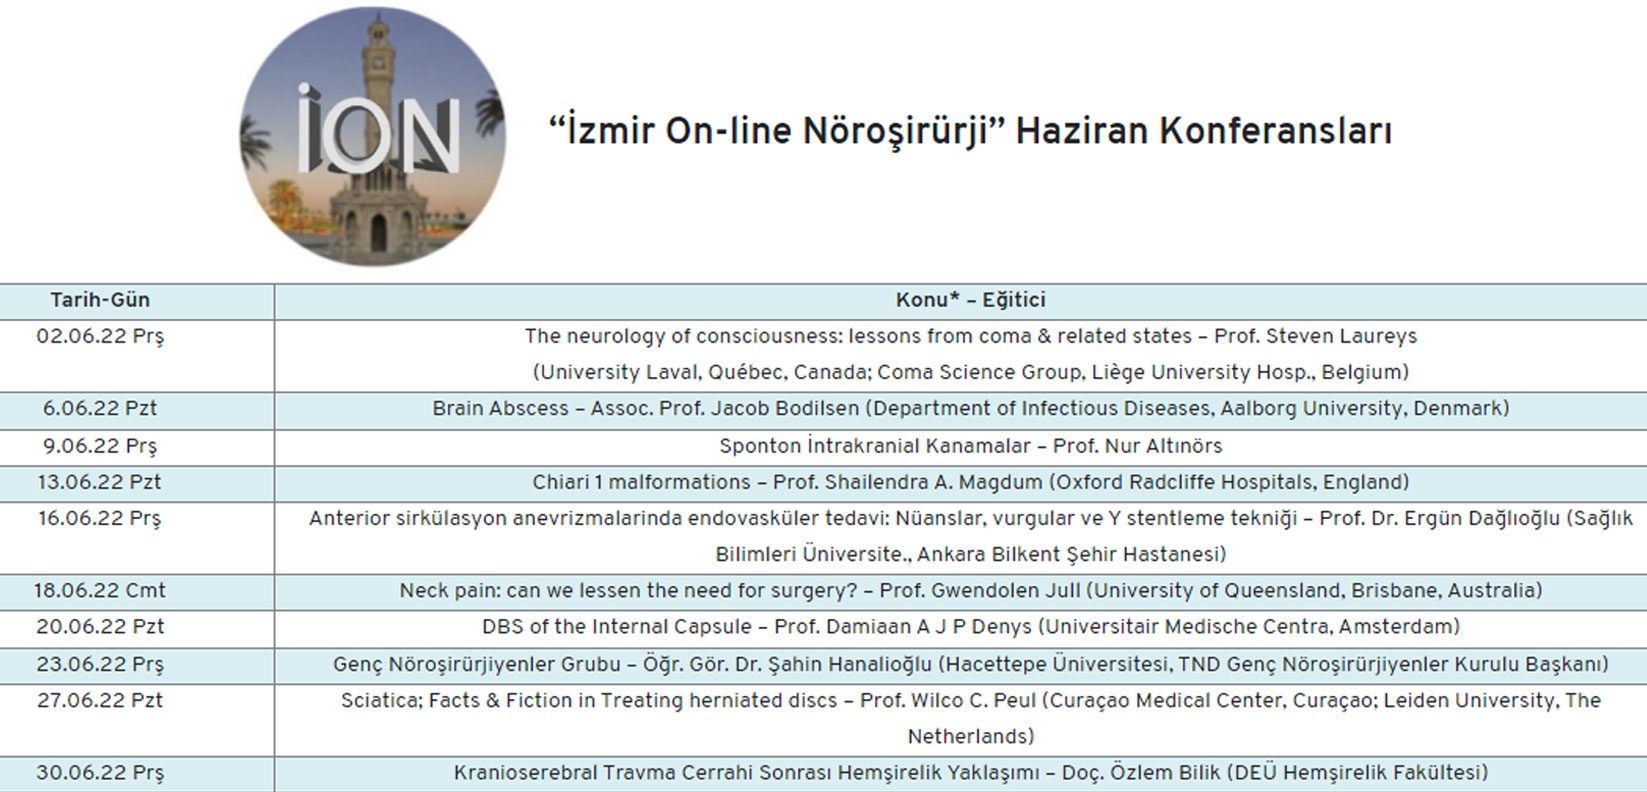 “İzmir On-line Nöroşirürji” Haziran Konferansları